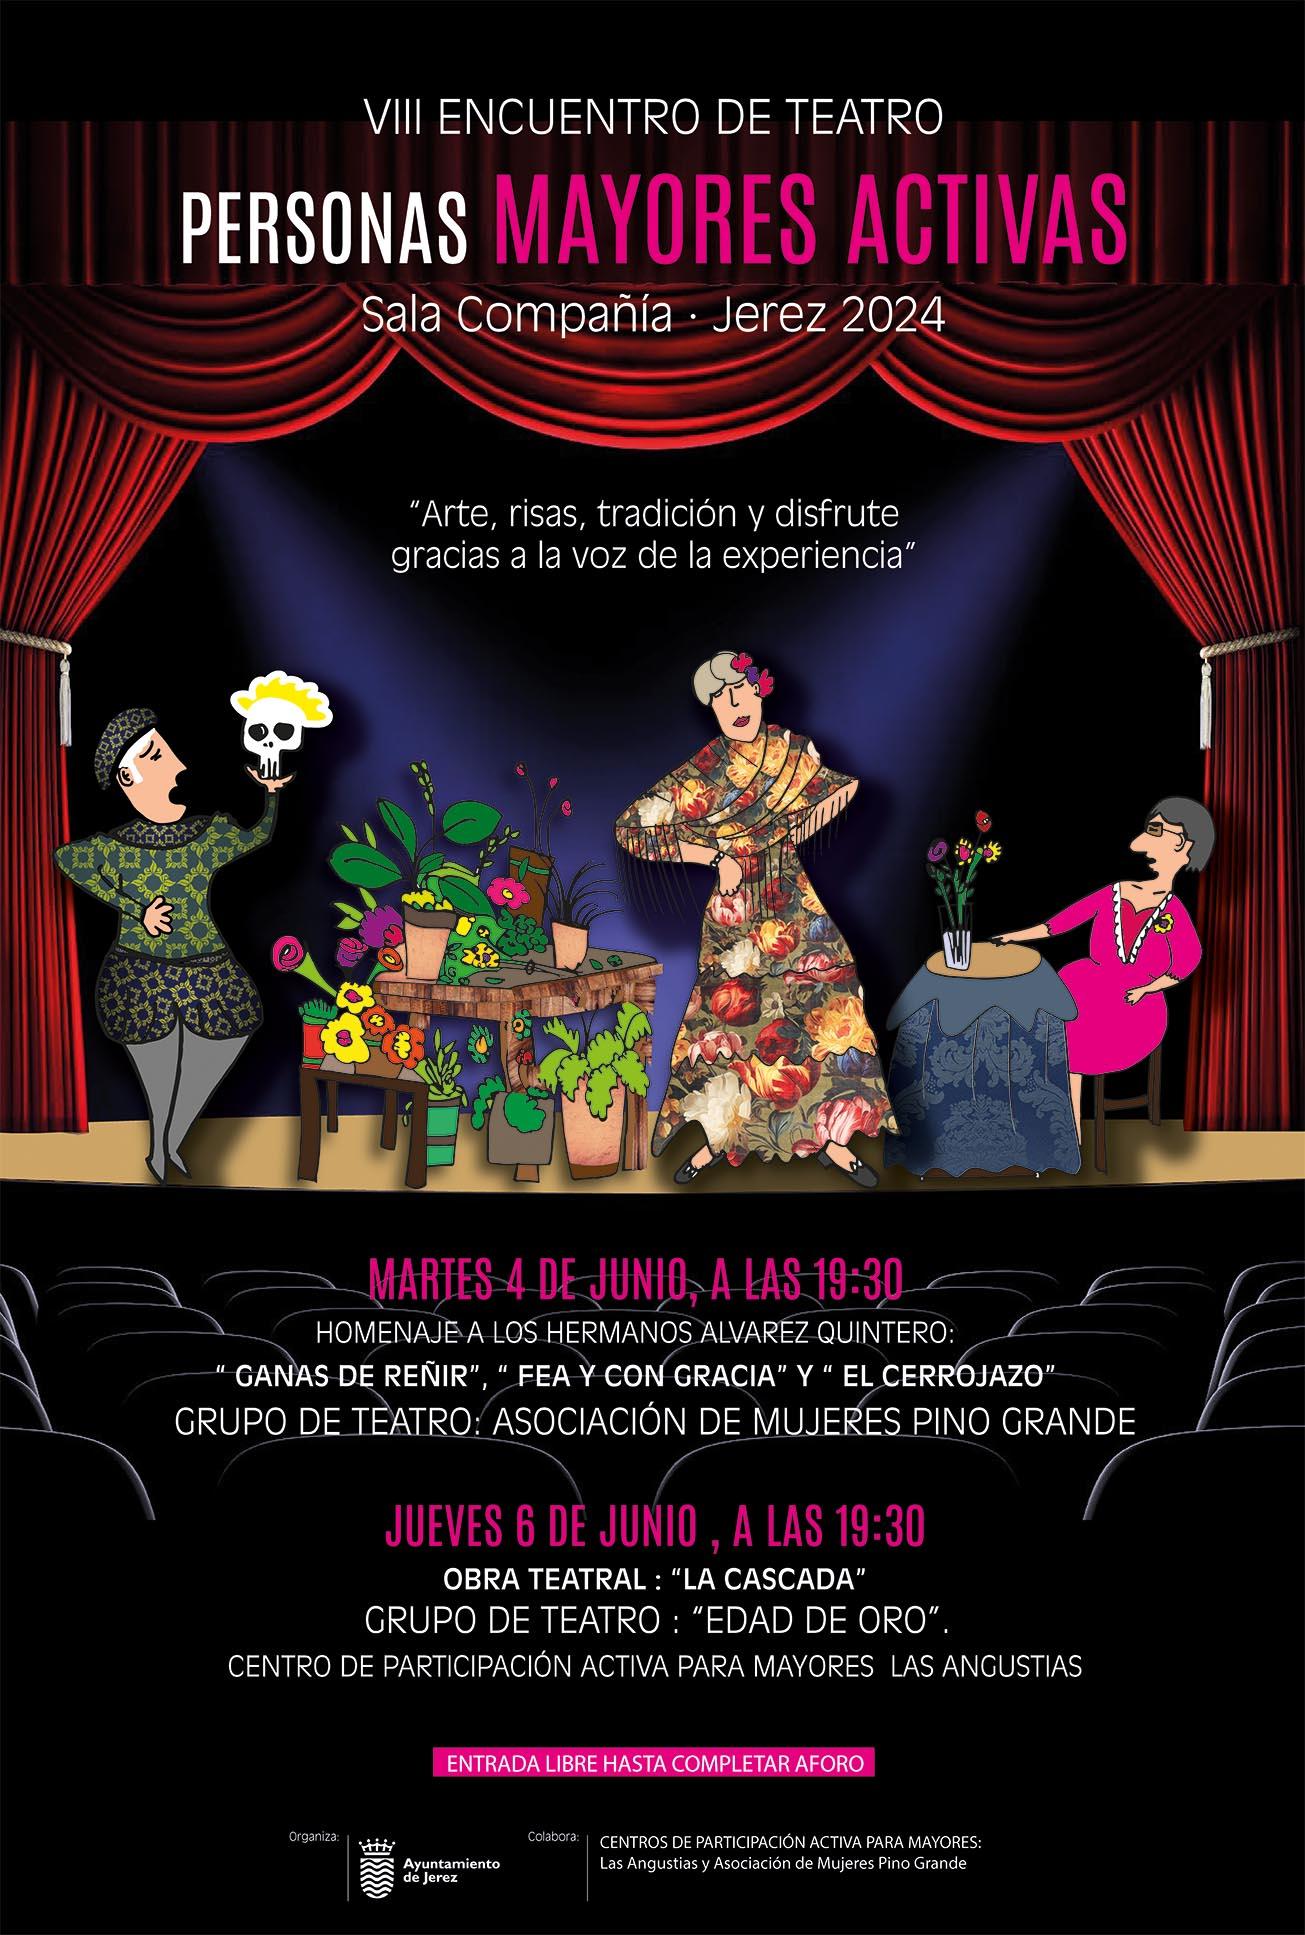 El VIII Encuentro de Teatro Personas Mayores Activas llega a Sala Compañía de Jerez la próxima semana